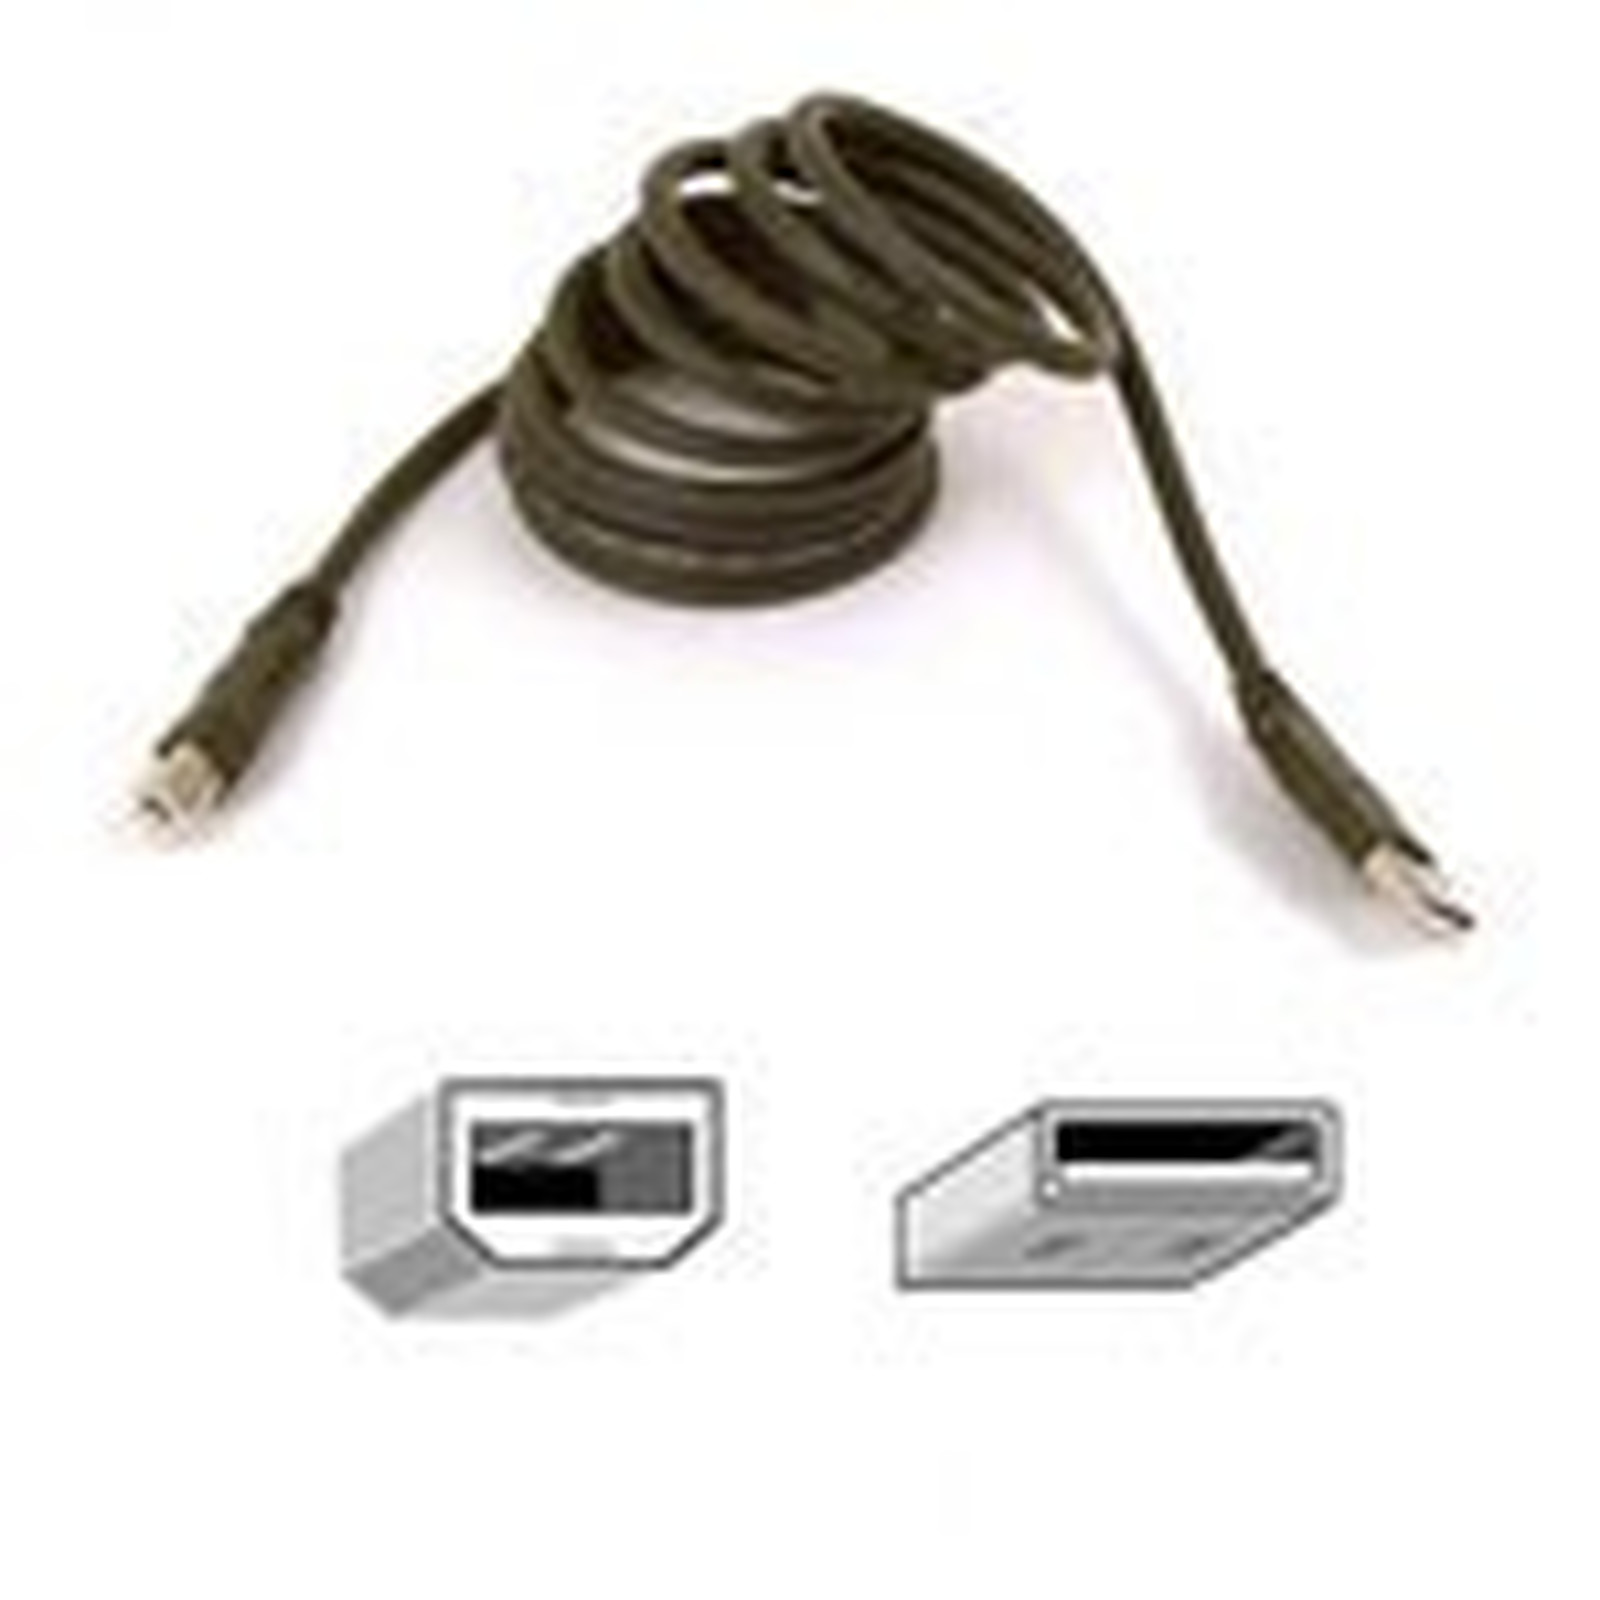 Belkin cable USB 2.0 Type AB (Male/Male) - 3 m - USB Belkin